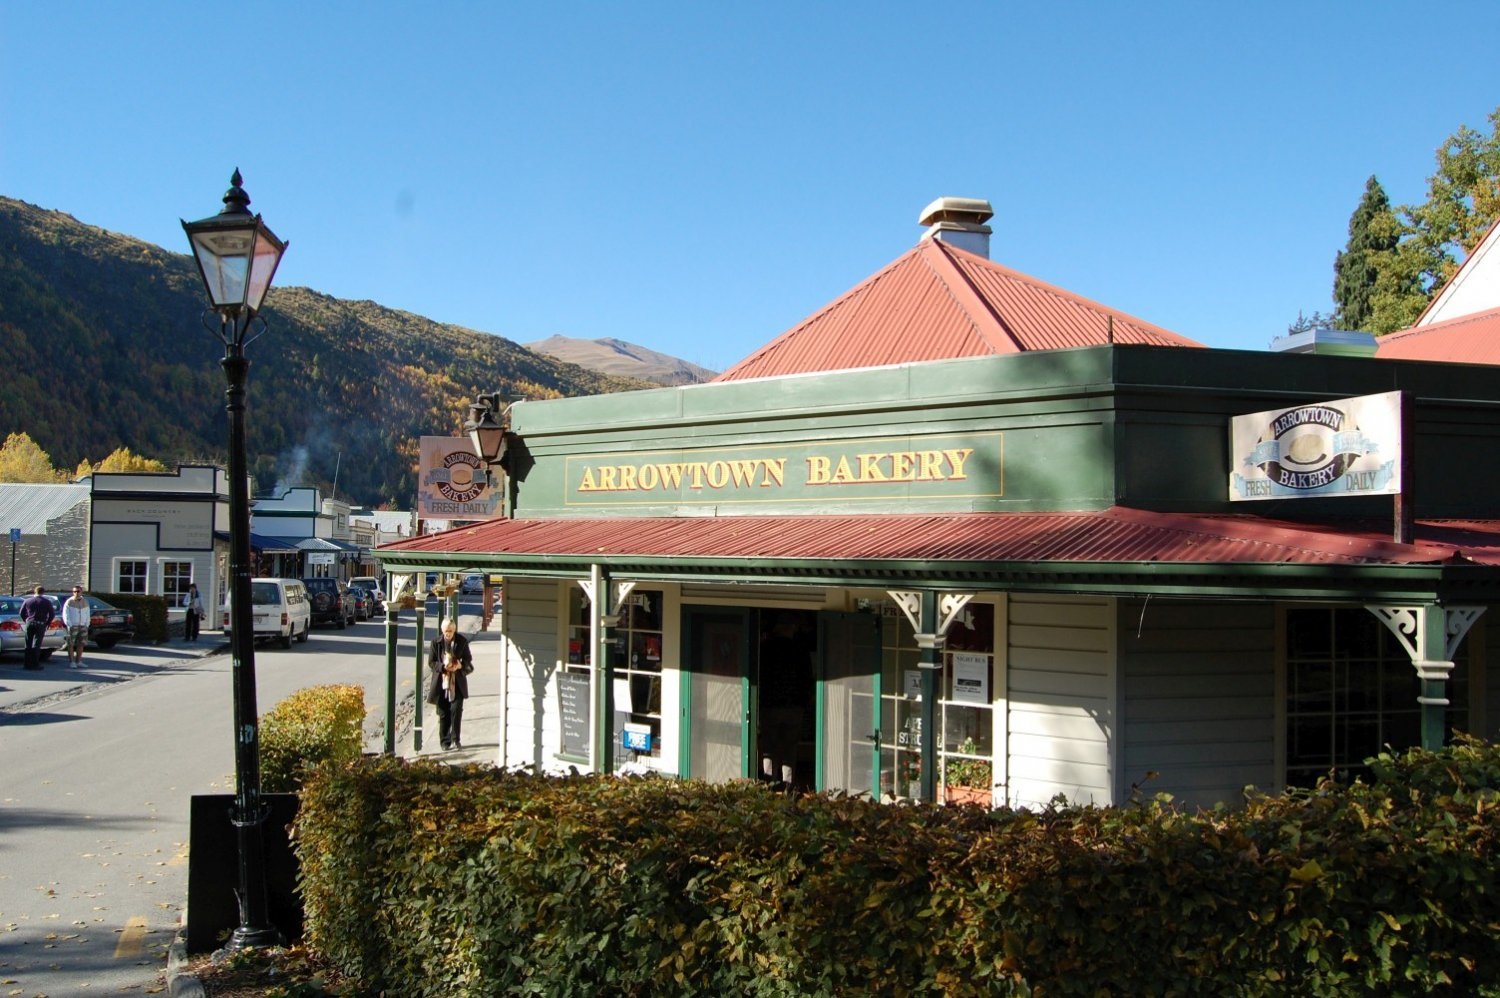 Arrowtown Bakery and Café